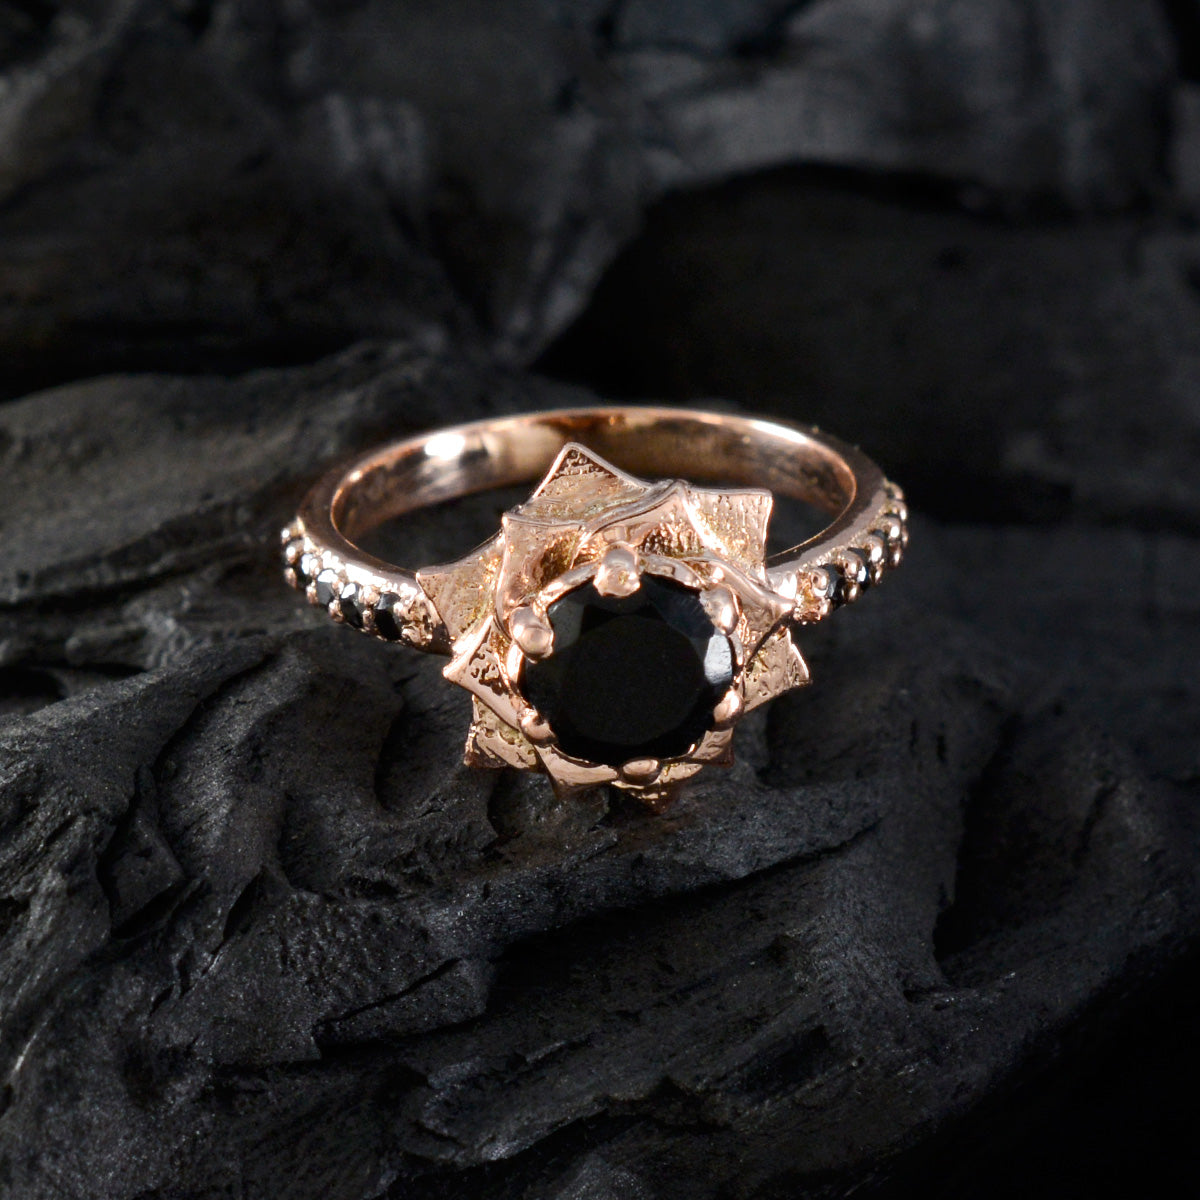 riyo raro anello in argento con placcatura in oro rosa pietra di onice nera a forma rotonda con montatura a punta gioielli fatti a mano anello di natale